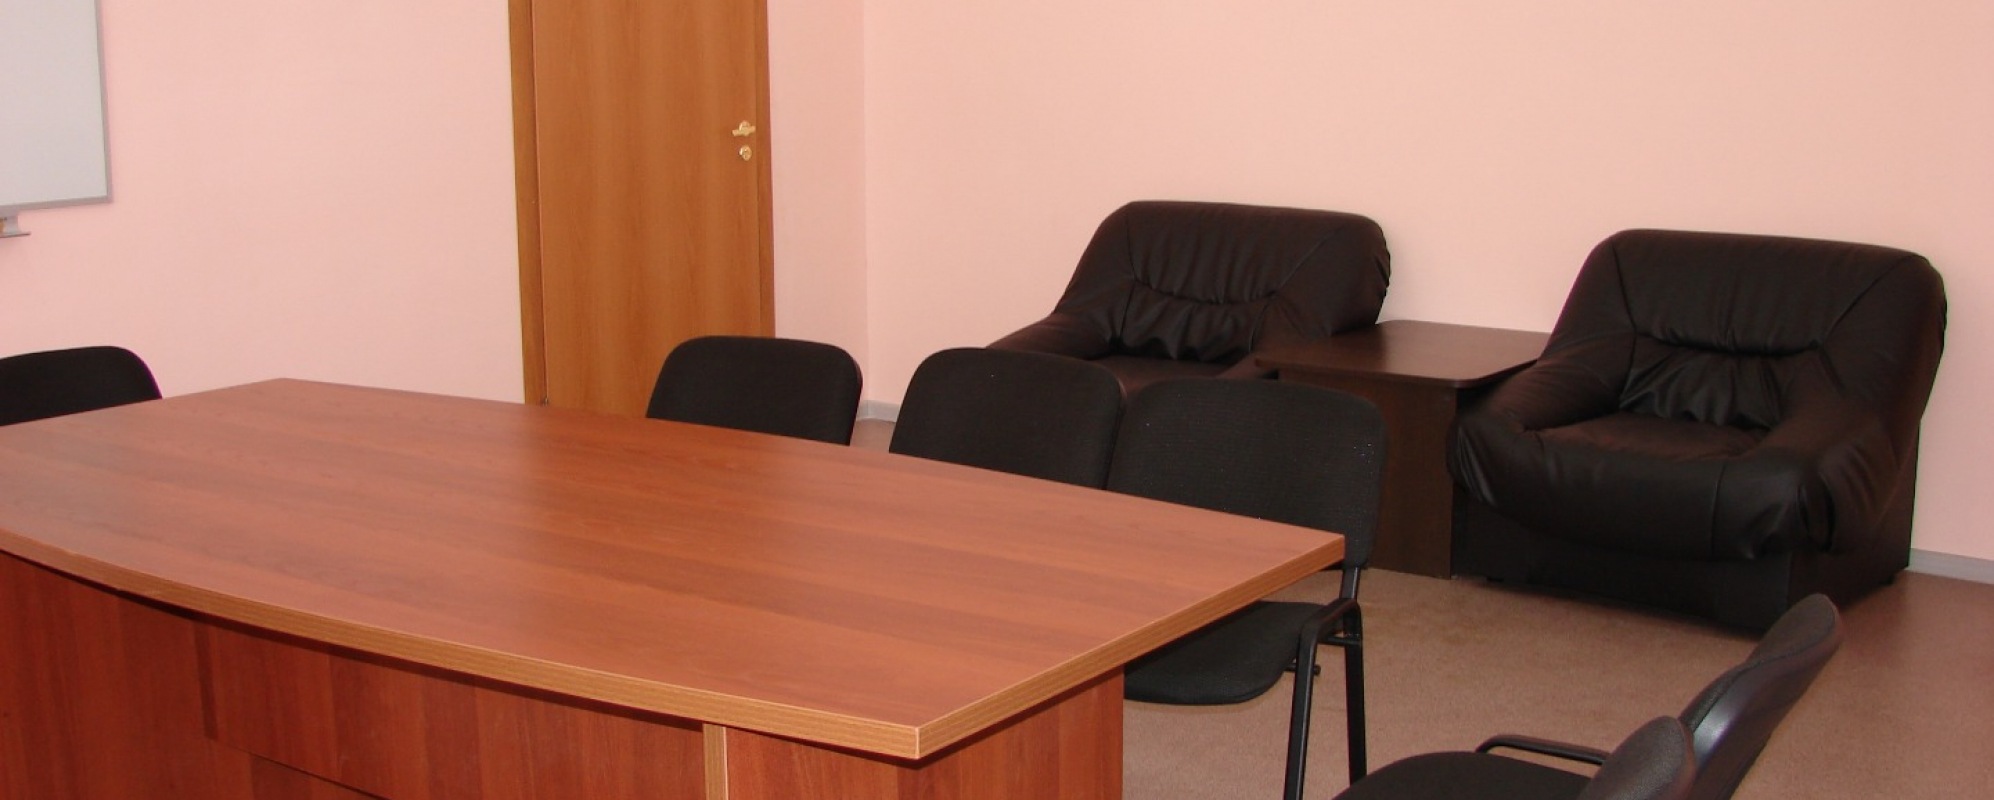 Фотографии комнаты для переговоров Бизнес-инкубатора Татлин